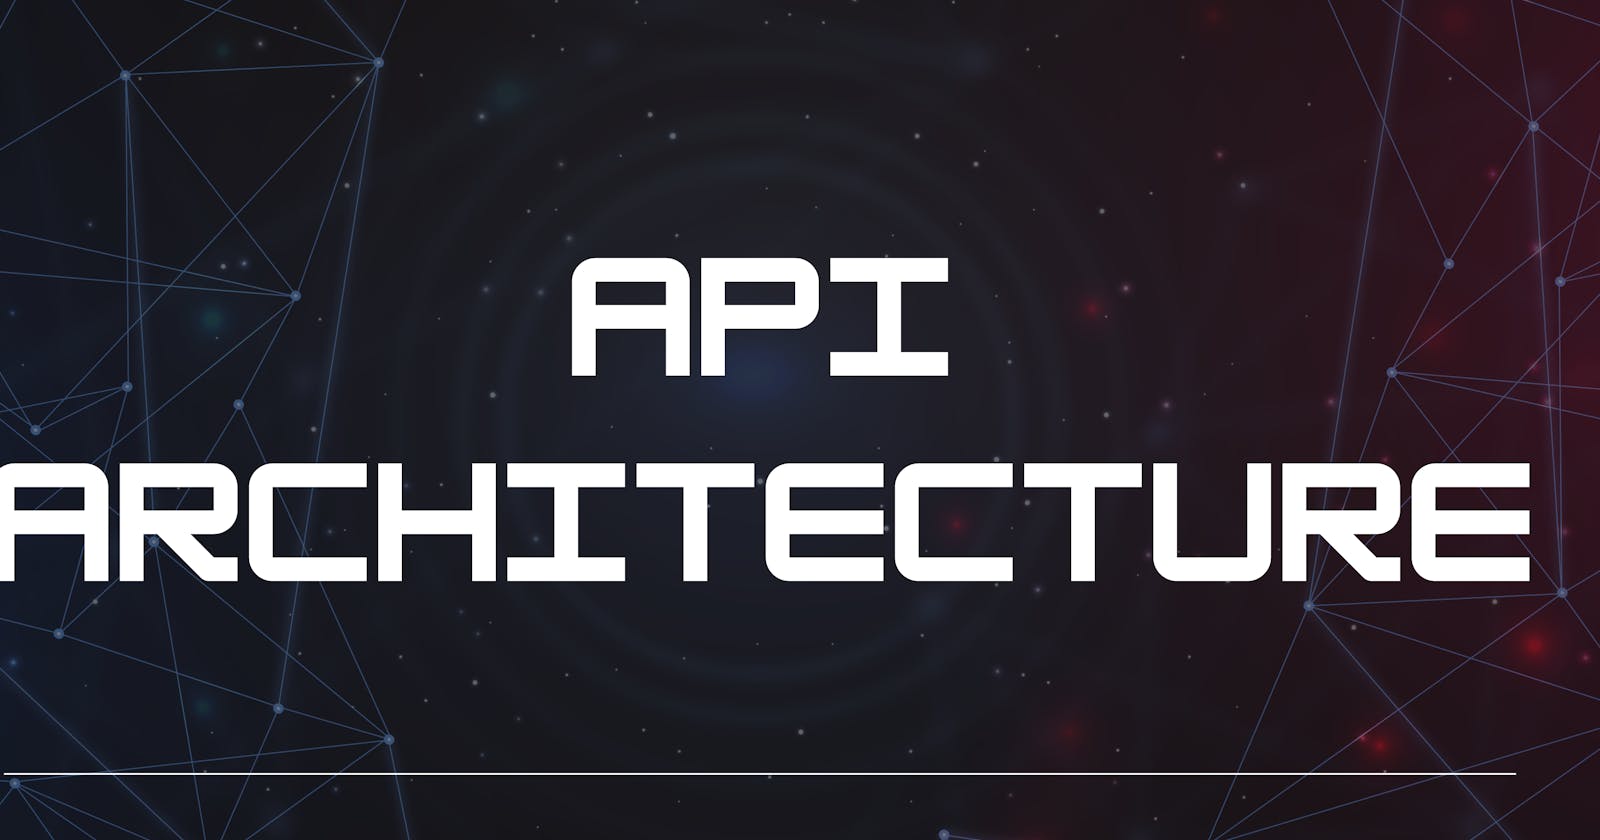 REST:API Architecture